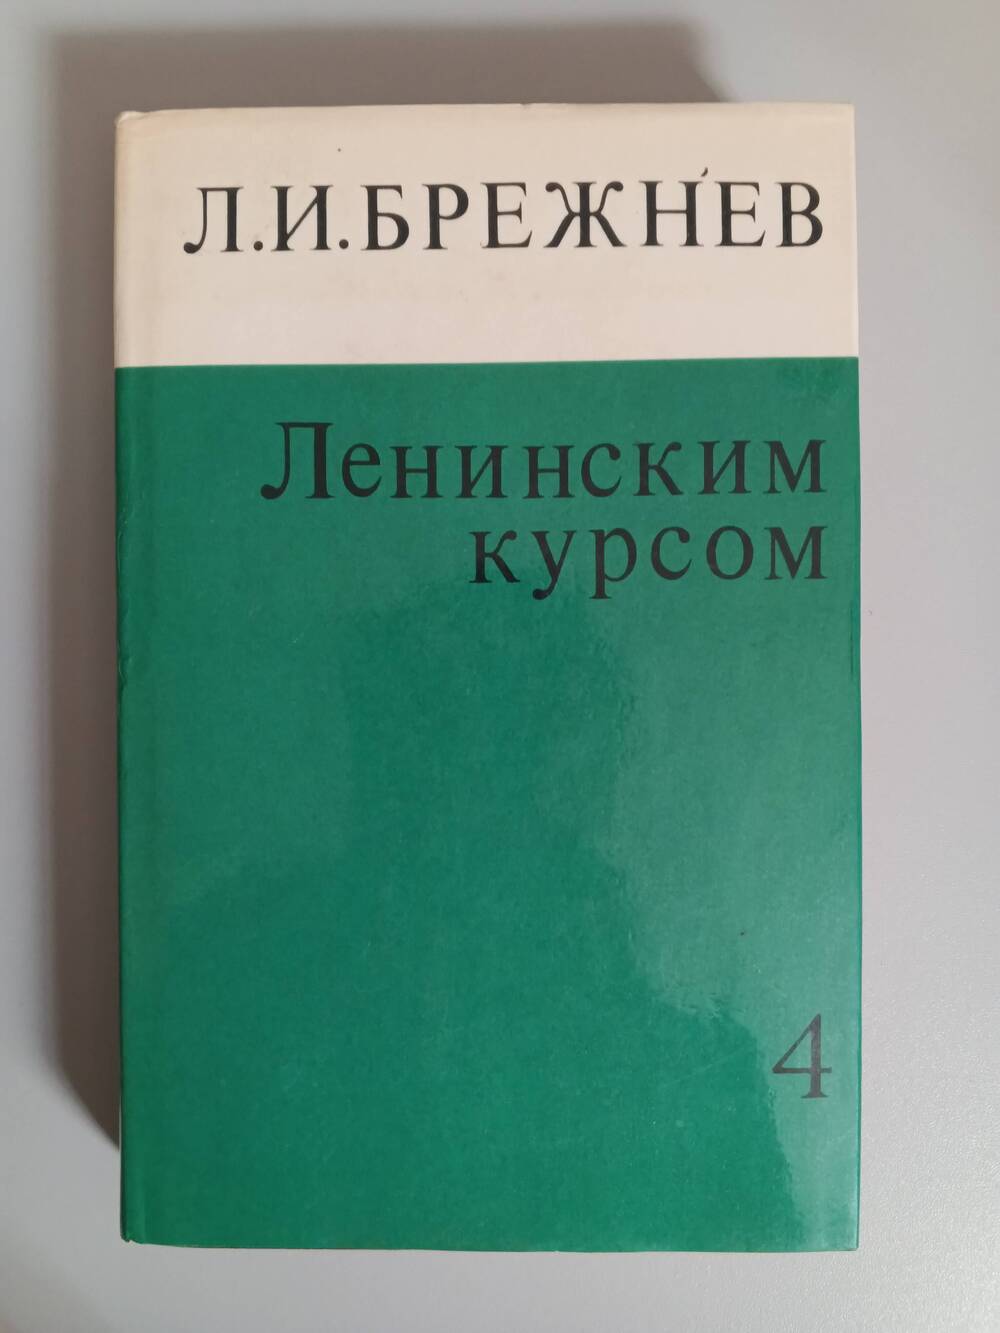 Книга «Ленинским курсом»